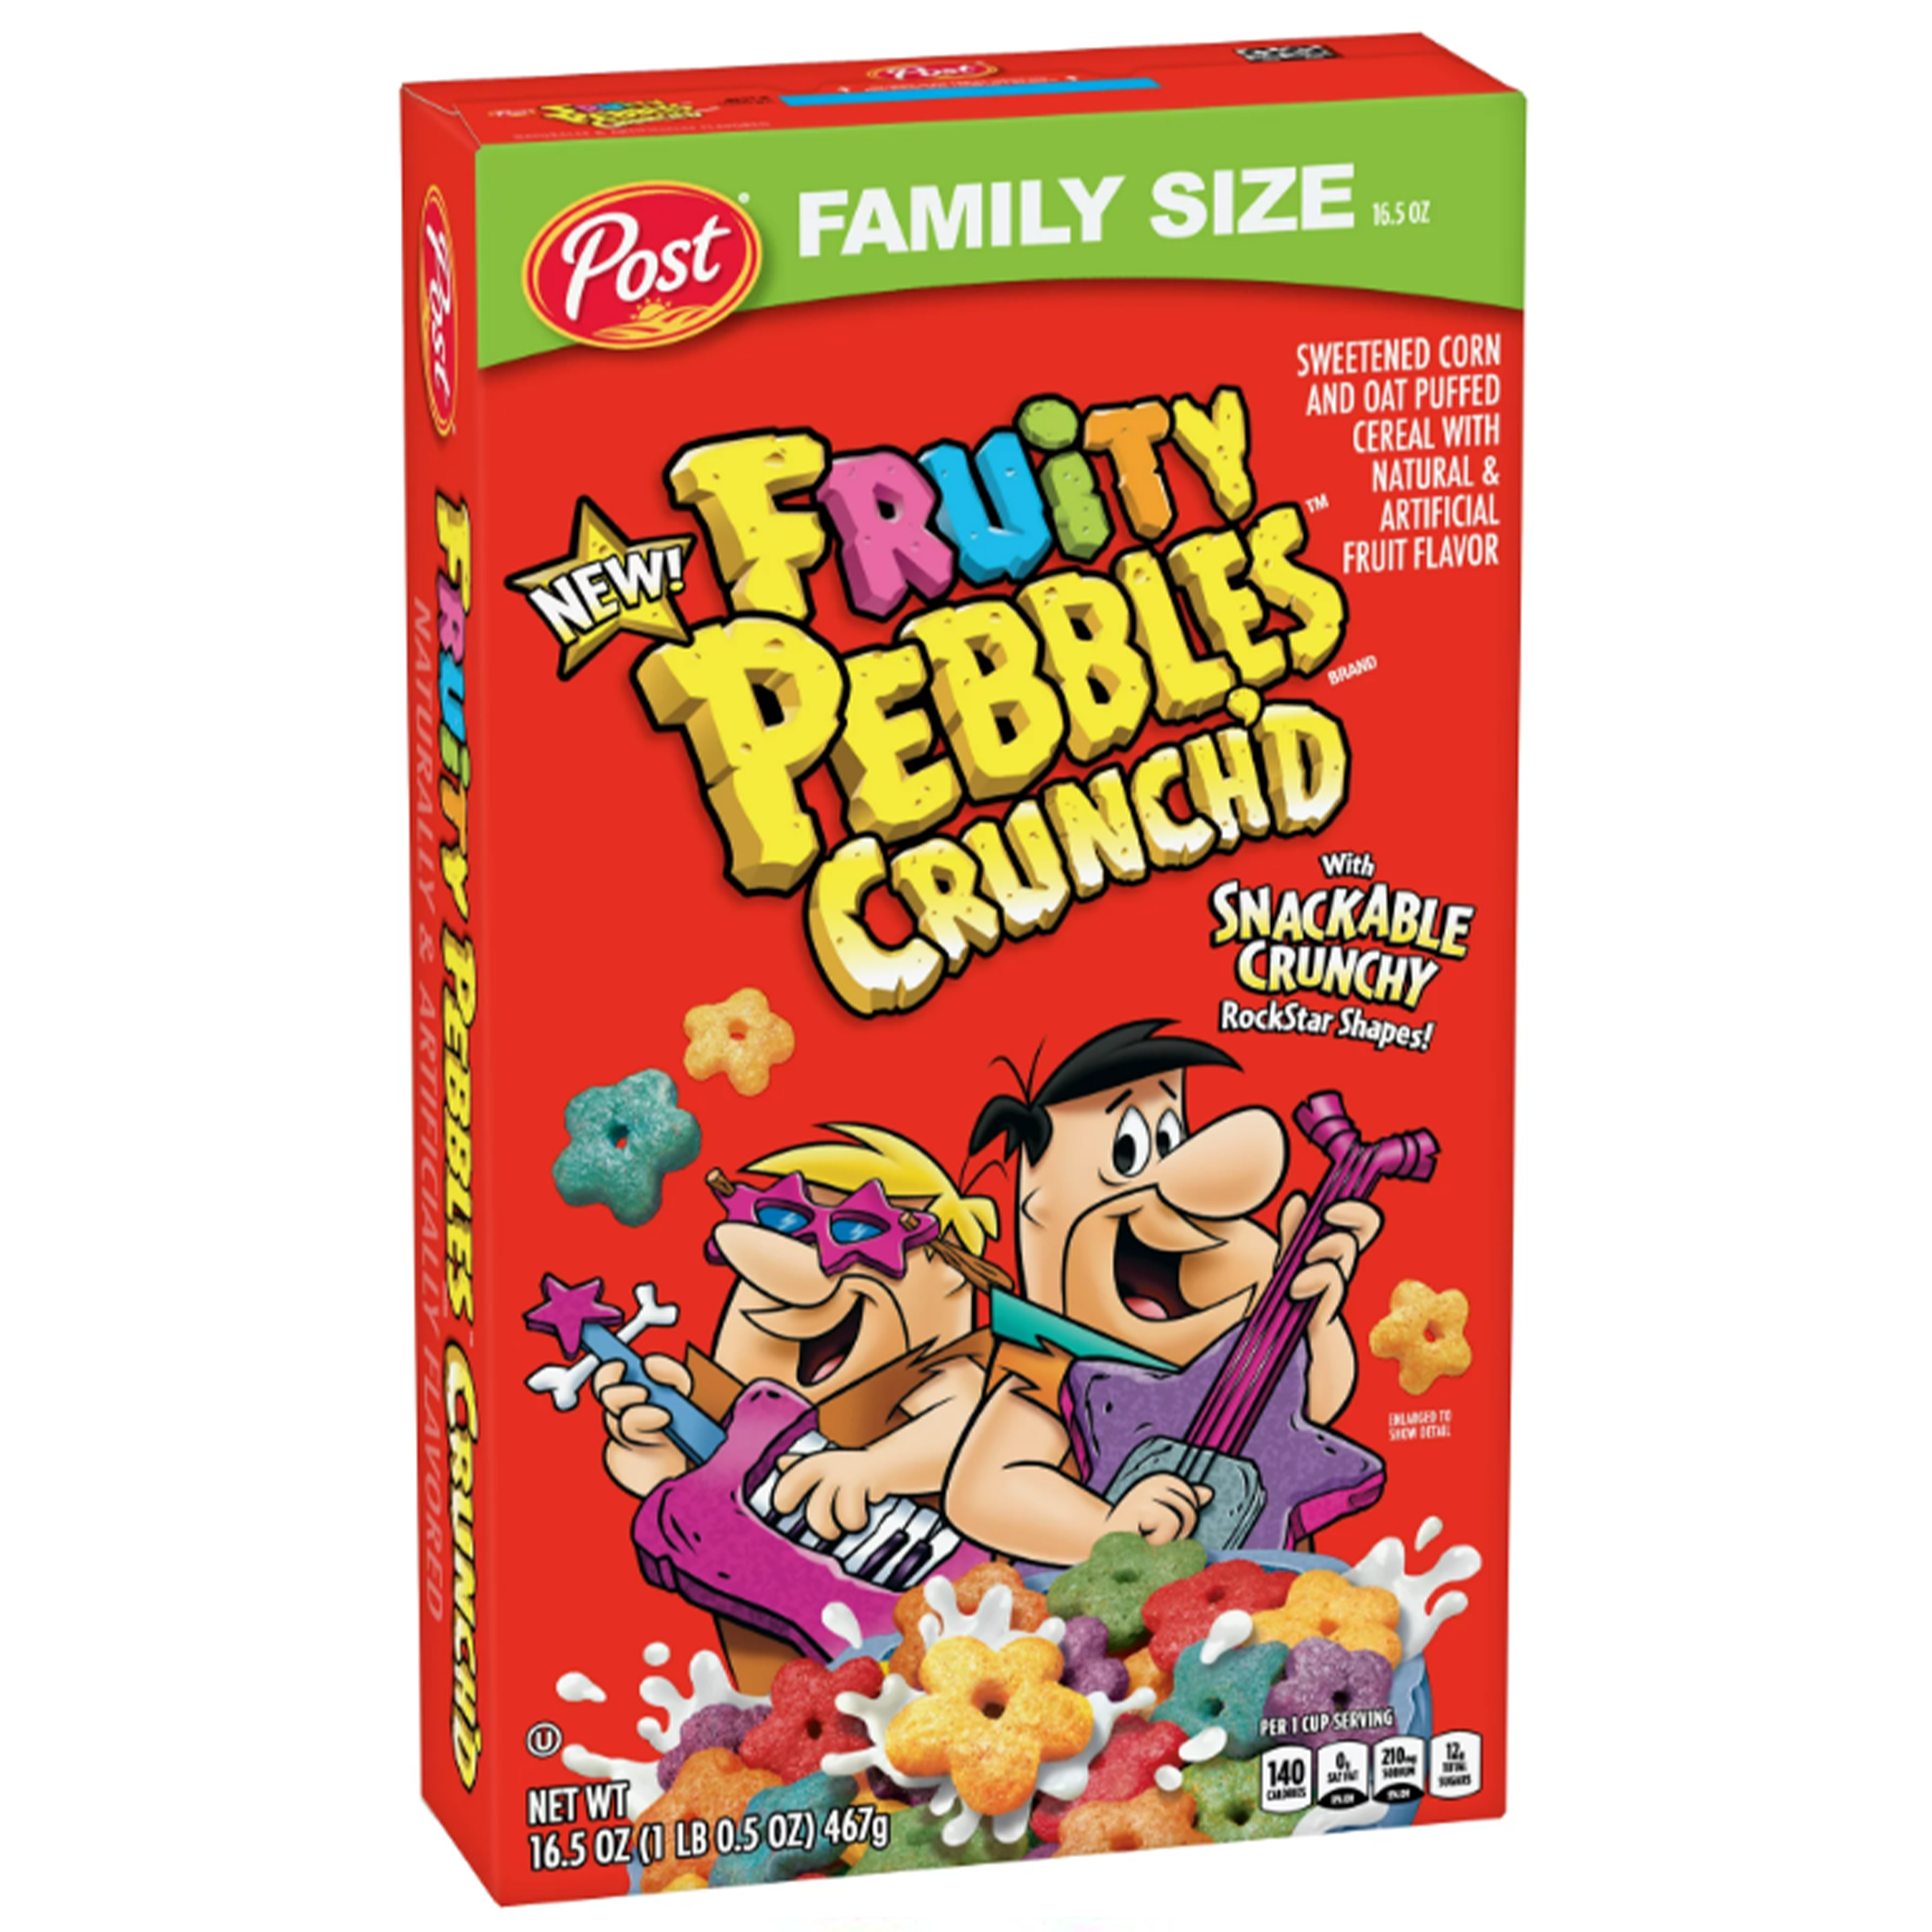 Fruity Pebbles Crunch'D